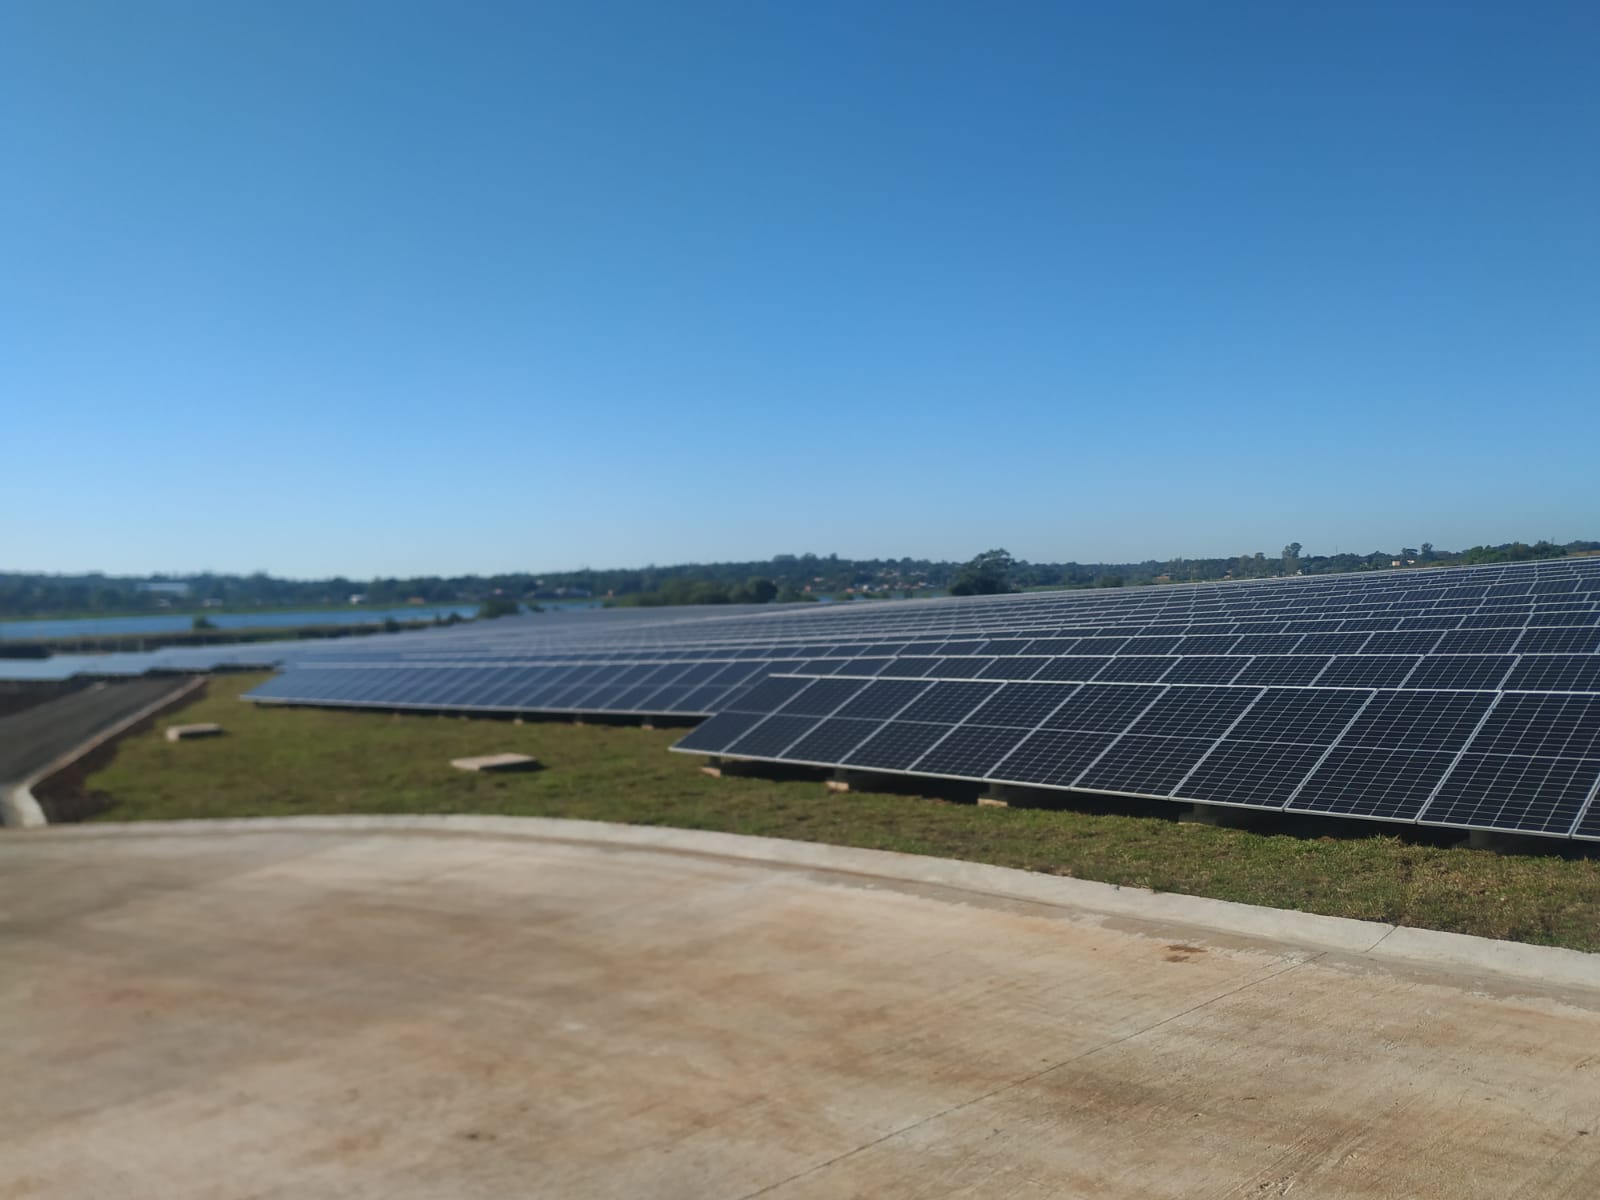 Ponen en marcha el Parque Solar Fotovoltaico "Silicon Misiones", de 5 megas, capaz de abastecer de energía a unas 2 mil familias de Posadas imagen-12